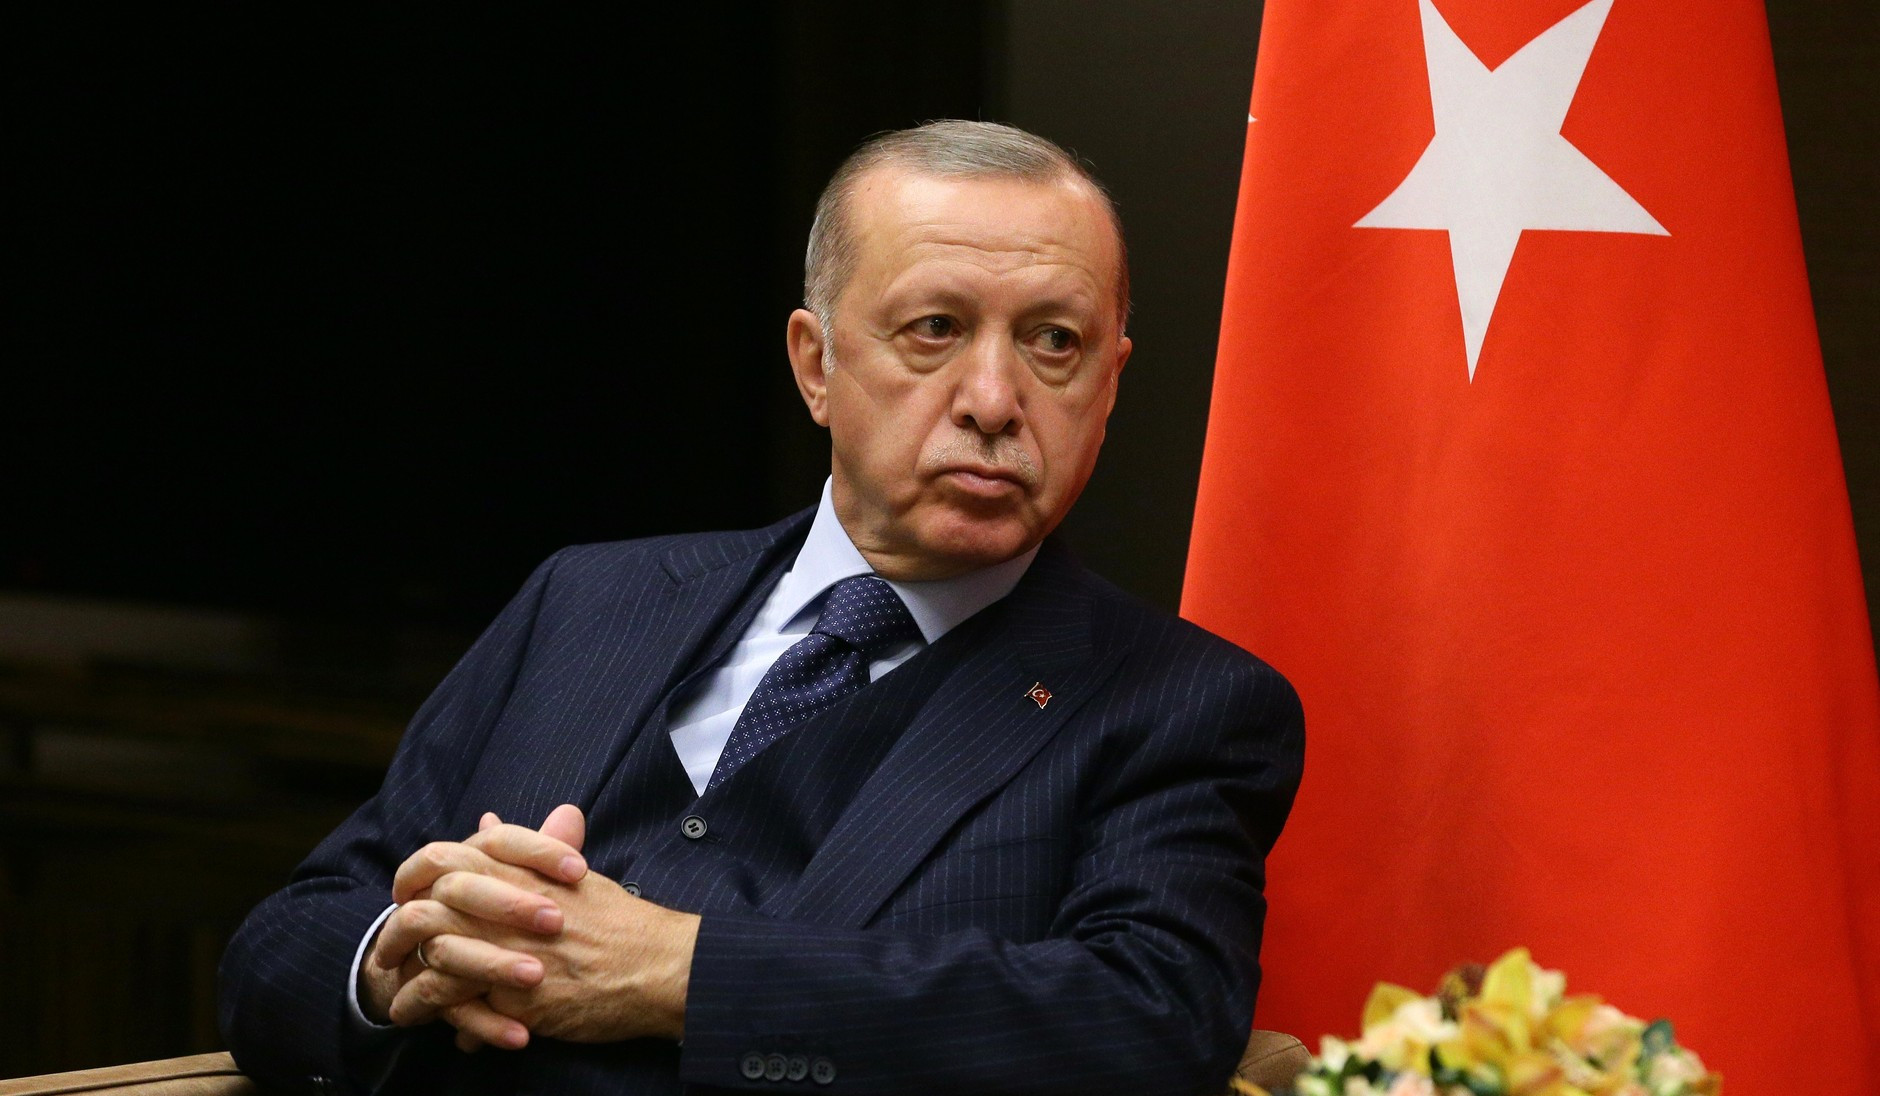 Թուրքիայի նախագահը հուլիսի 18-19-ը պաշտոնական այցով կլինի Իրանում